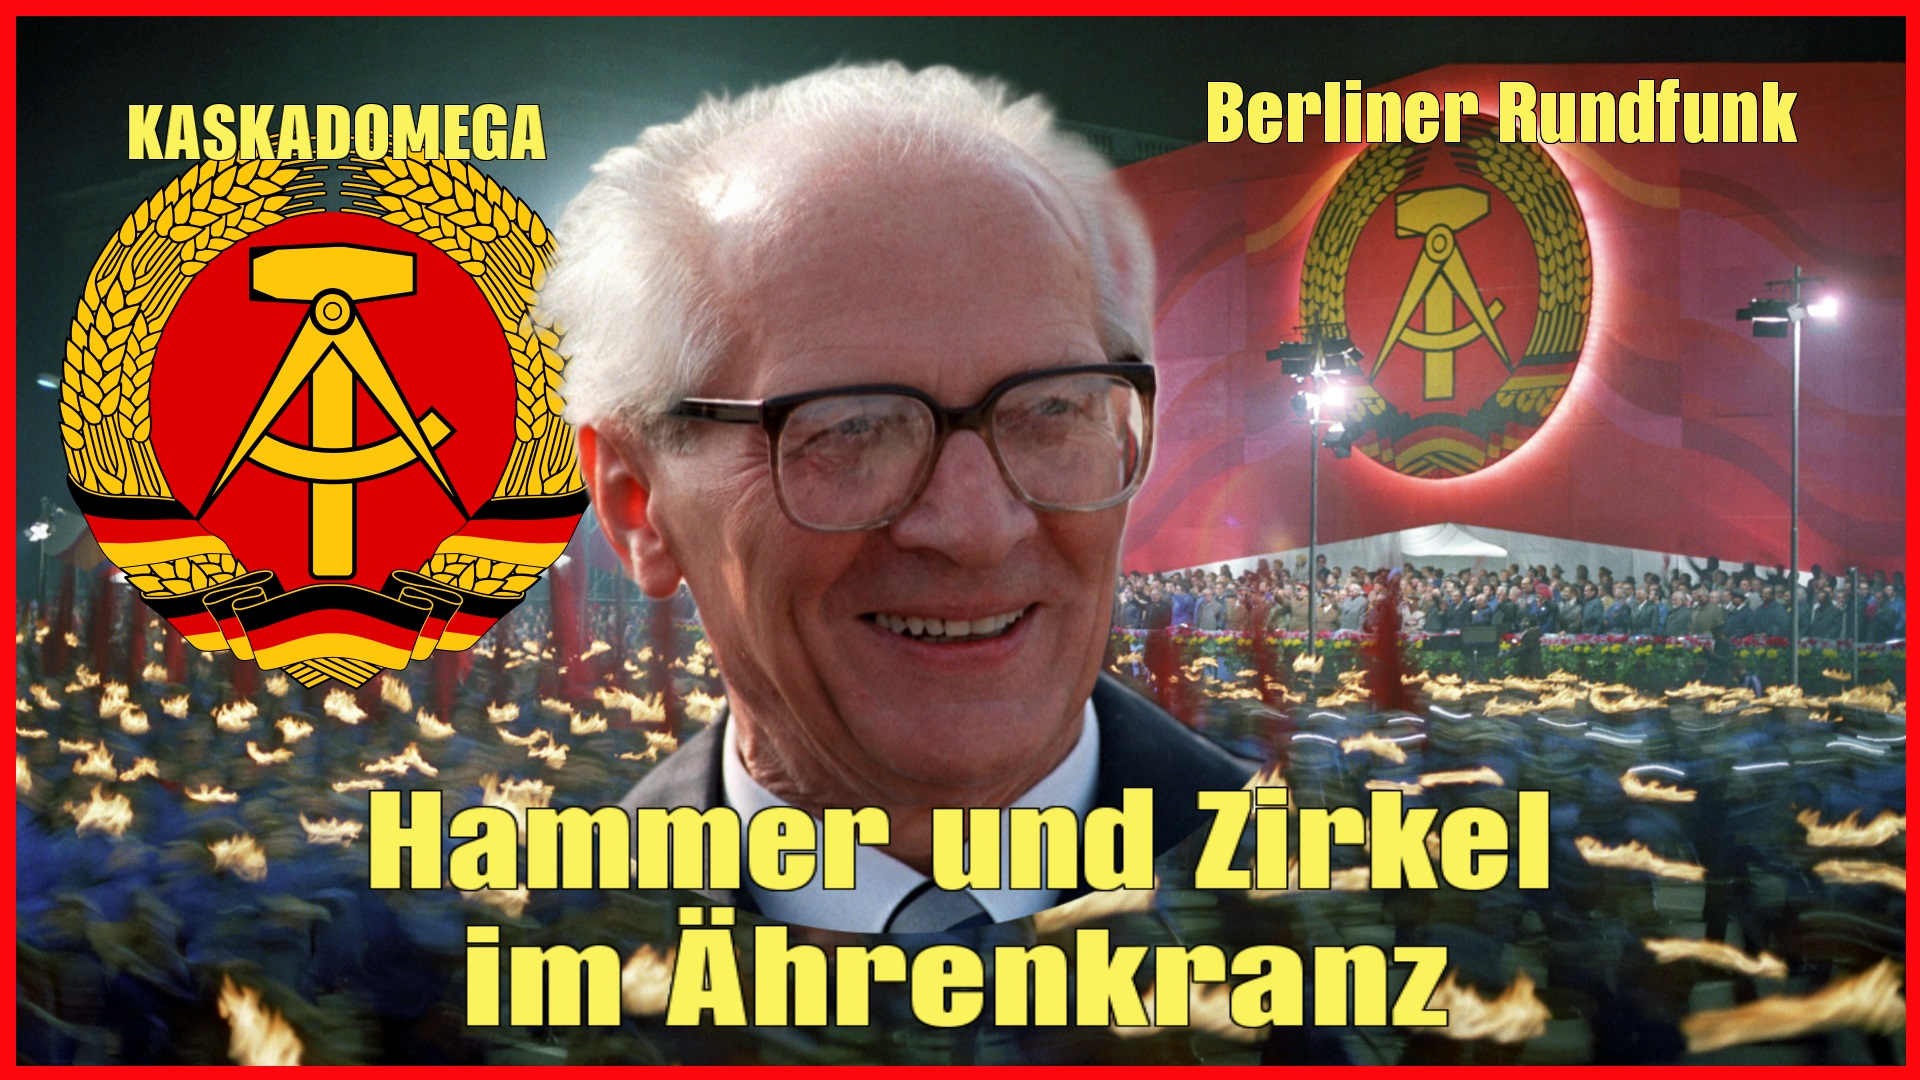 Песня о Гербе ГДР / Hammer und Zirkel im Ährenkranz (1969)